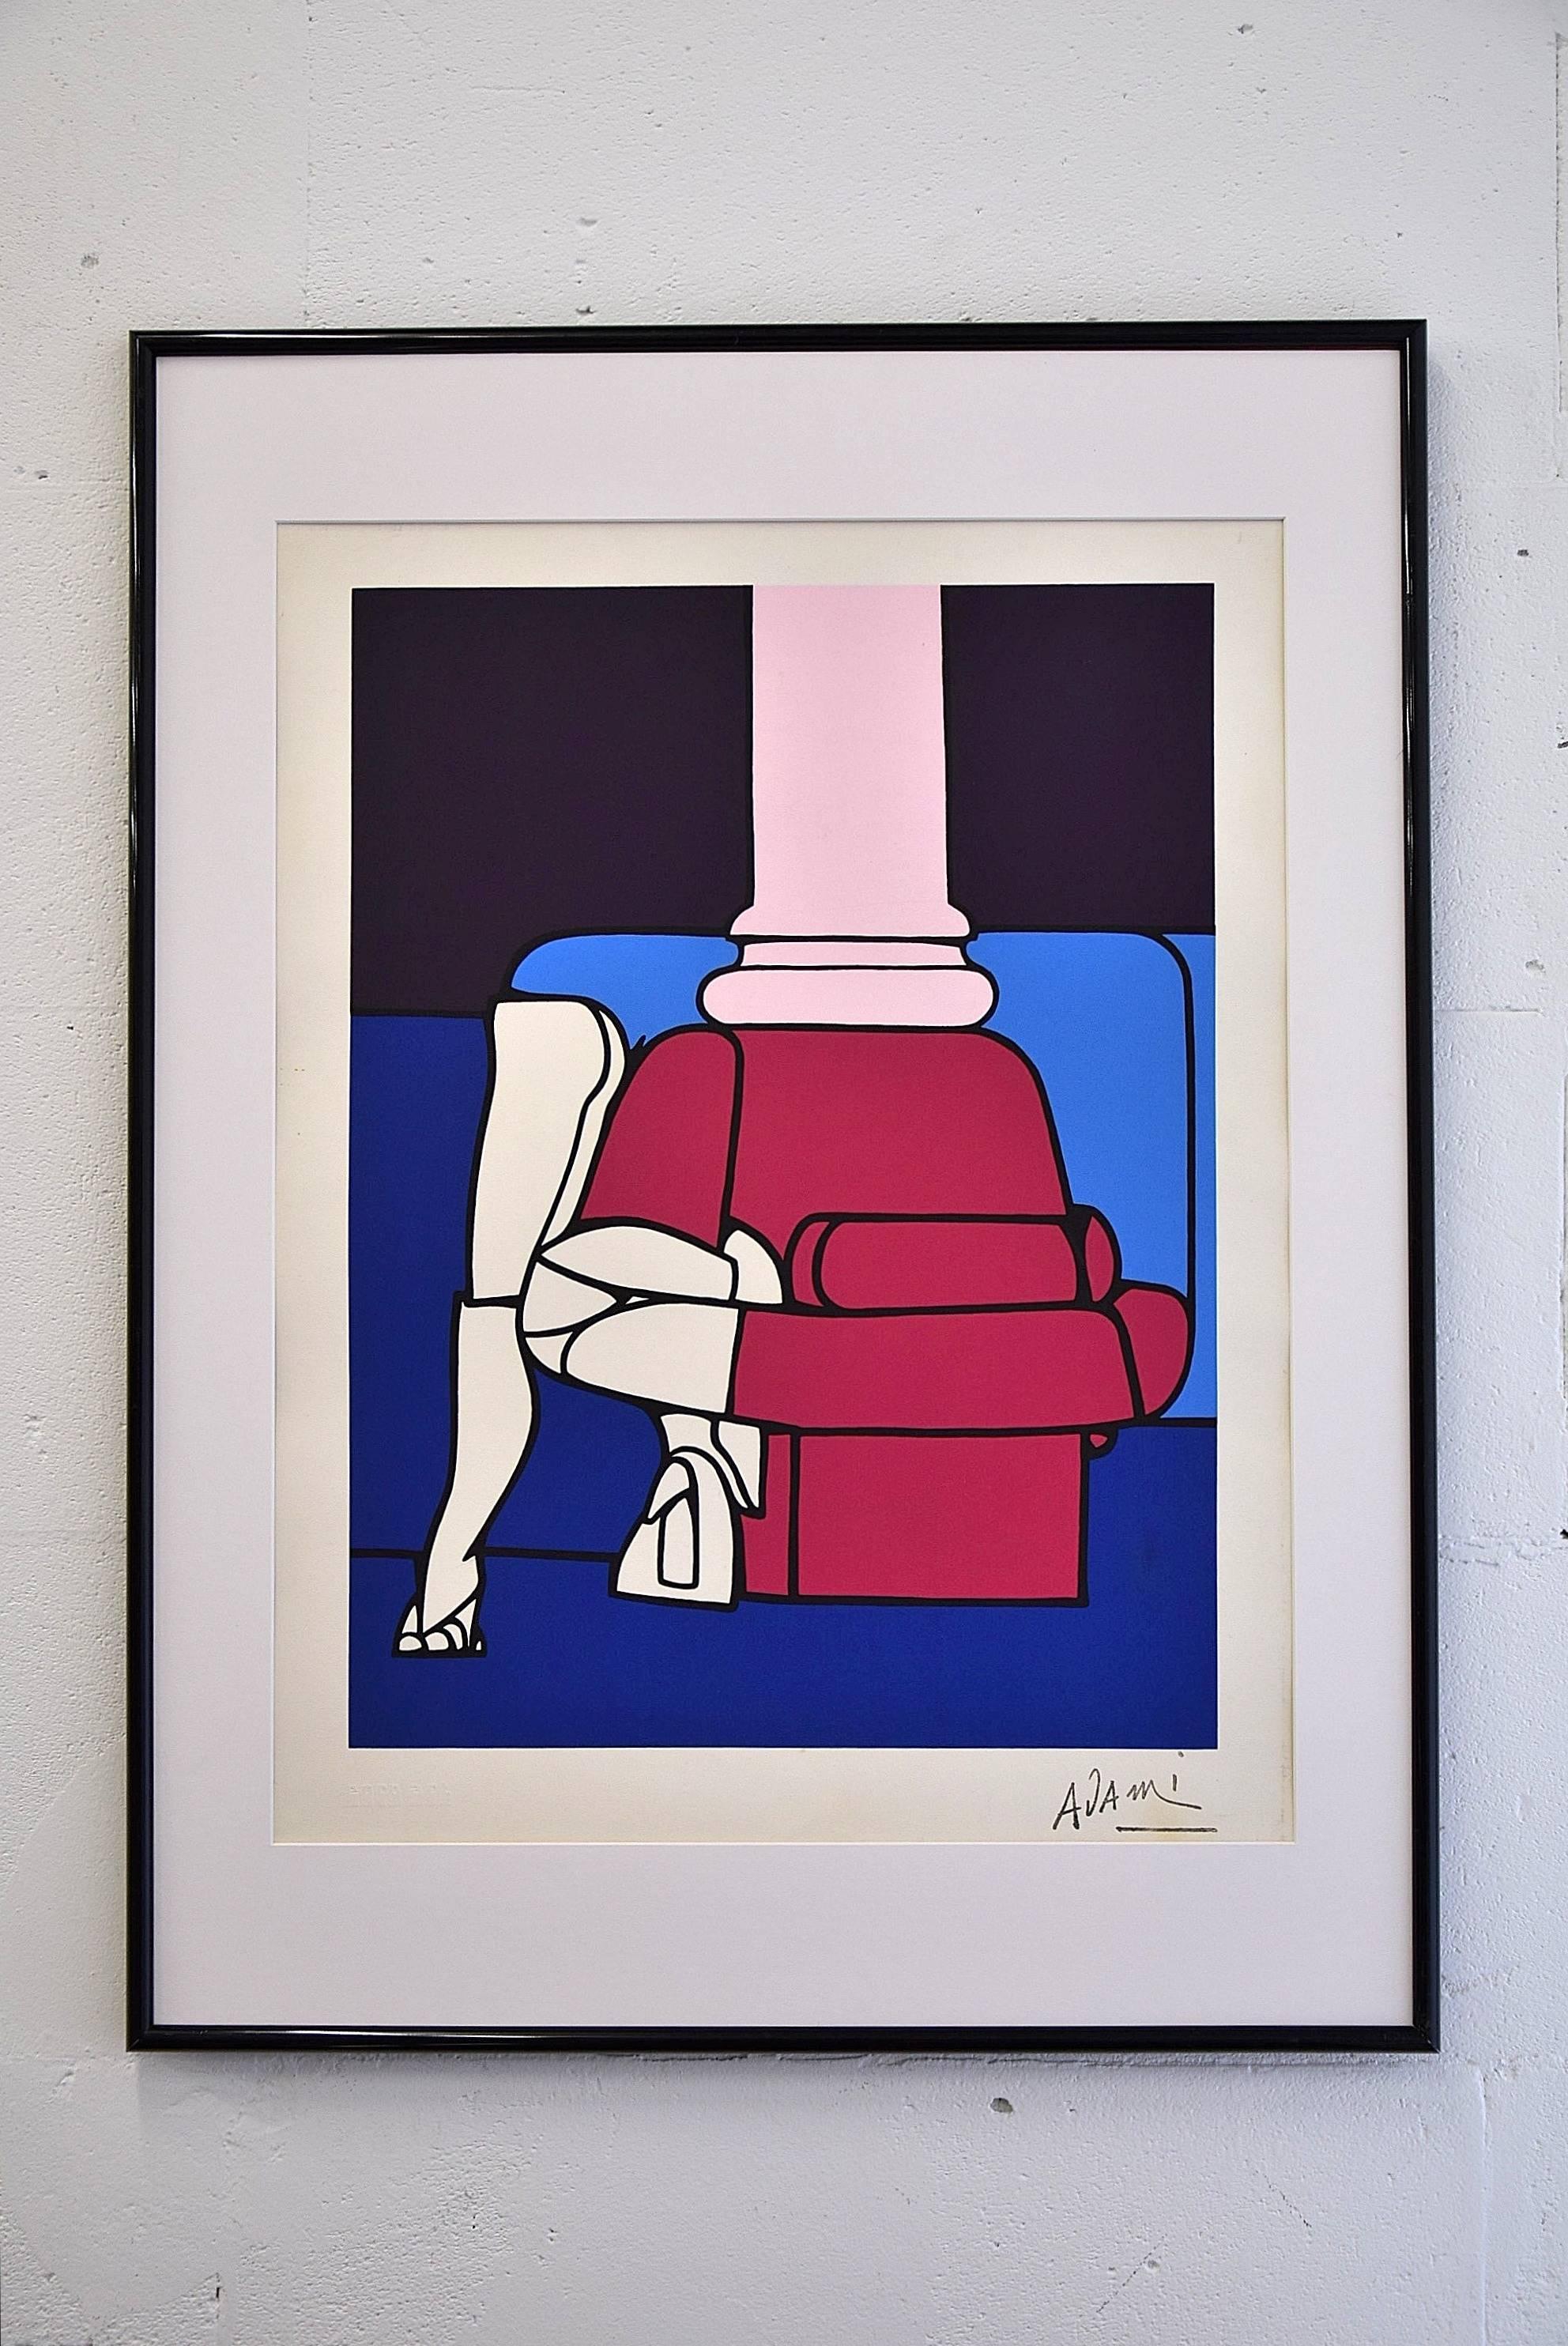 Wunderschöne Lithographie des weltberühmten Pop-Künstlers Valerio Adami aus den 1970er Jahren. Das Kunstwerk ist in hervorragendem Zustand.

Maße ohne Rahmen und Passepartout H.63 x B.47 cm.

Valerio Adami (geboren am 17. März 1935) ist ein